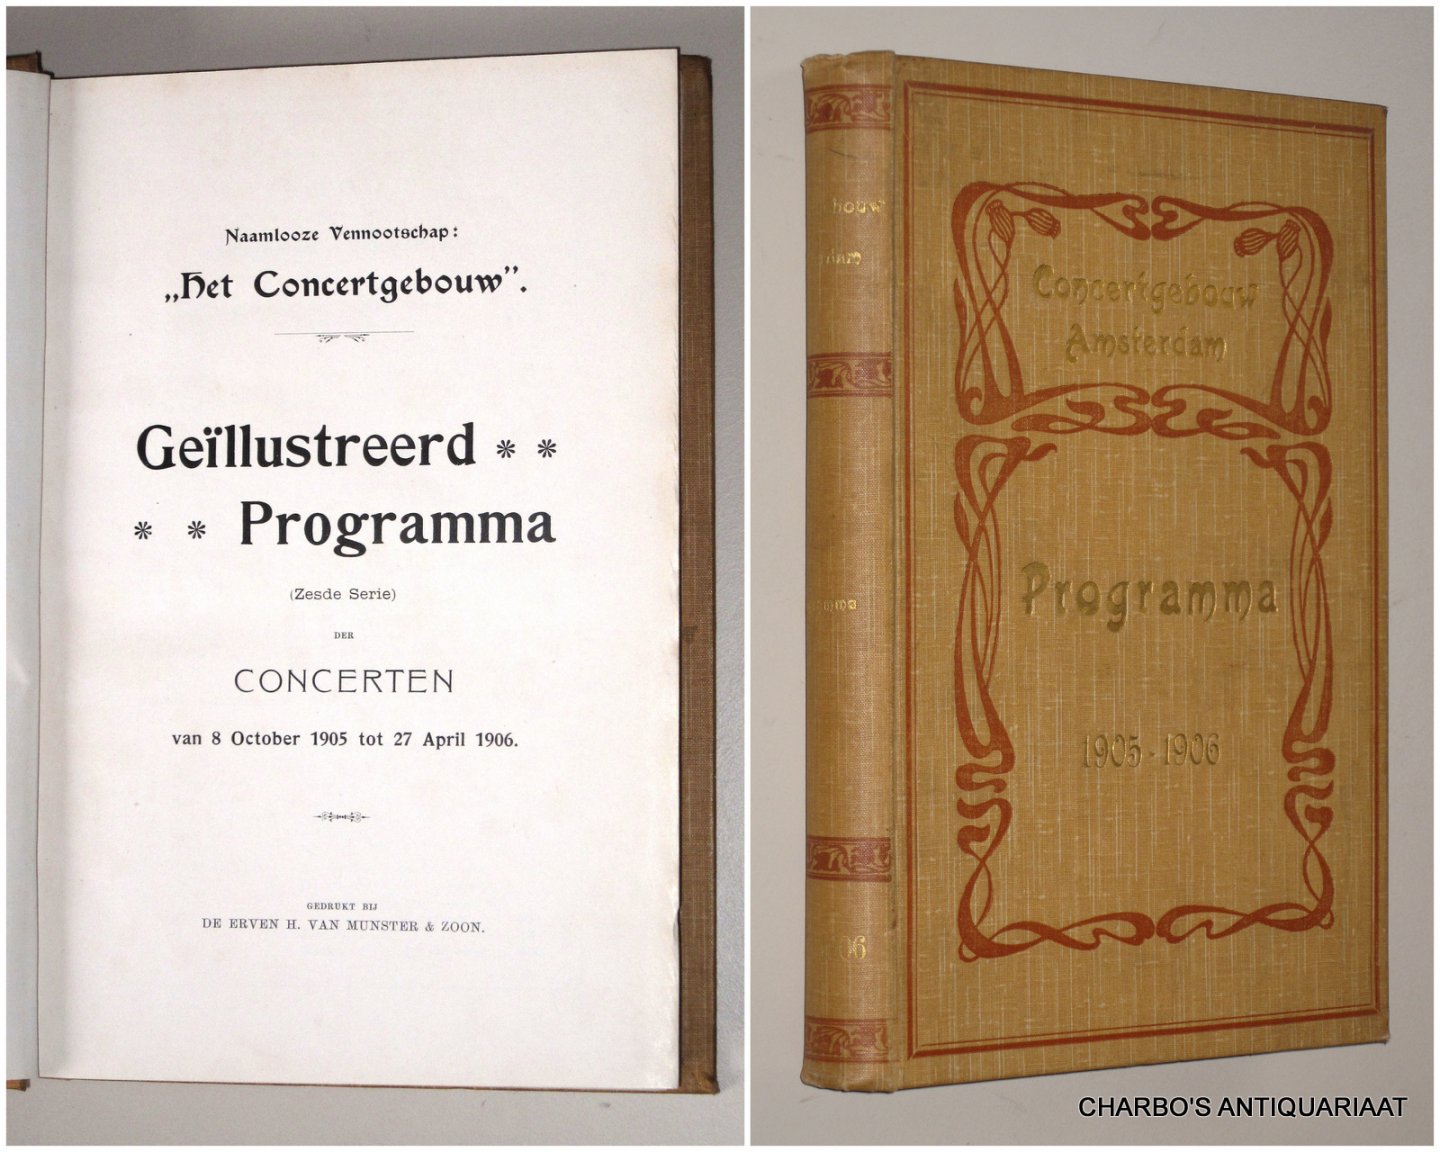 CONCERTGEBOUW, NAAMLOOZE VENNOOTSCHAP HET, - Geïllustreerd programma (zesde serie) der concerten van 8 October 1905 tot 27 April 1906.